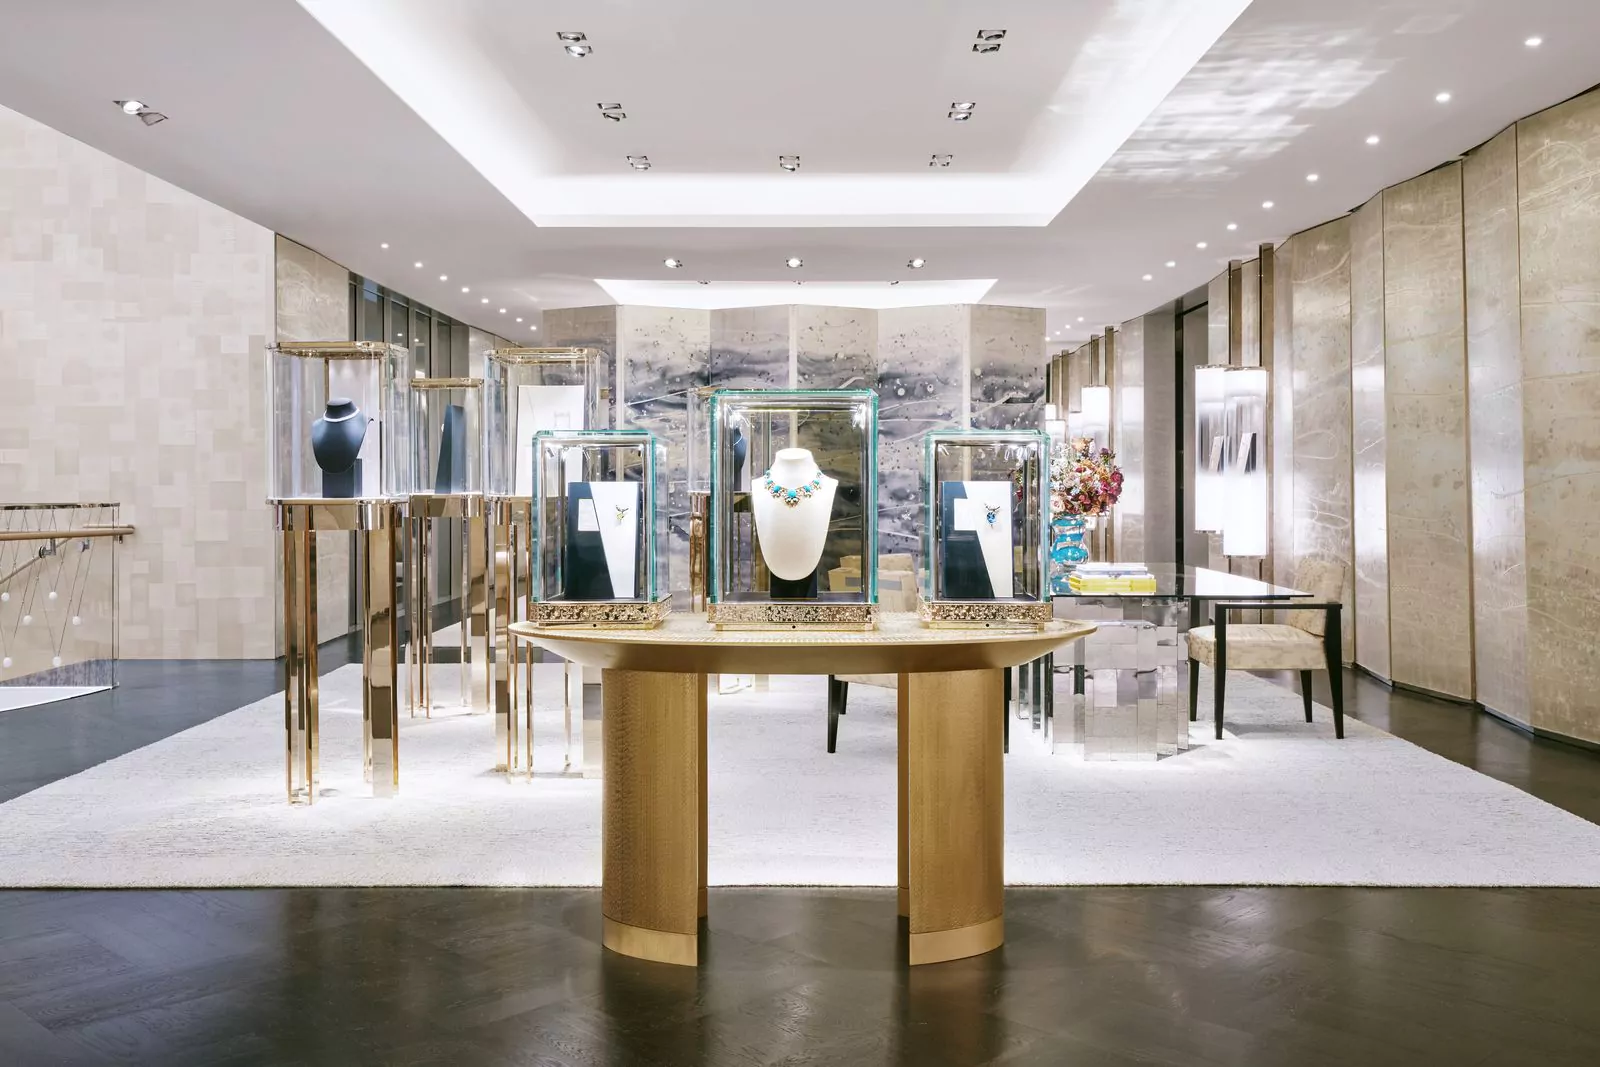 7 этаж магазина Tiffany & Co. — шедевры ювелирного искусства и часов и салон Patek Philippe